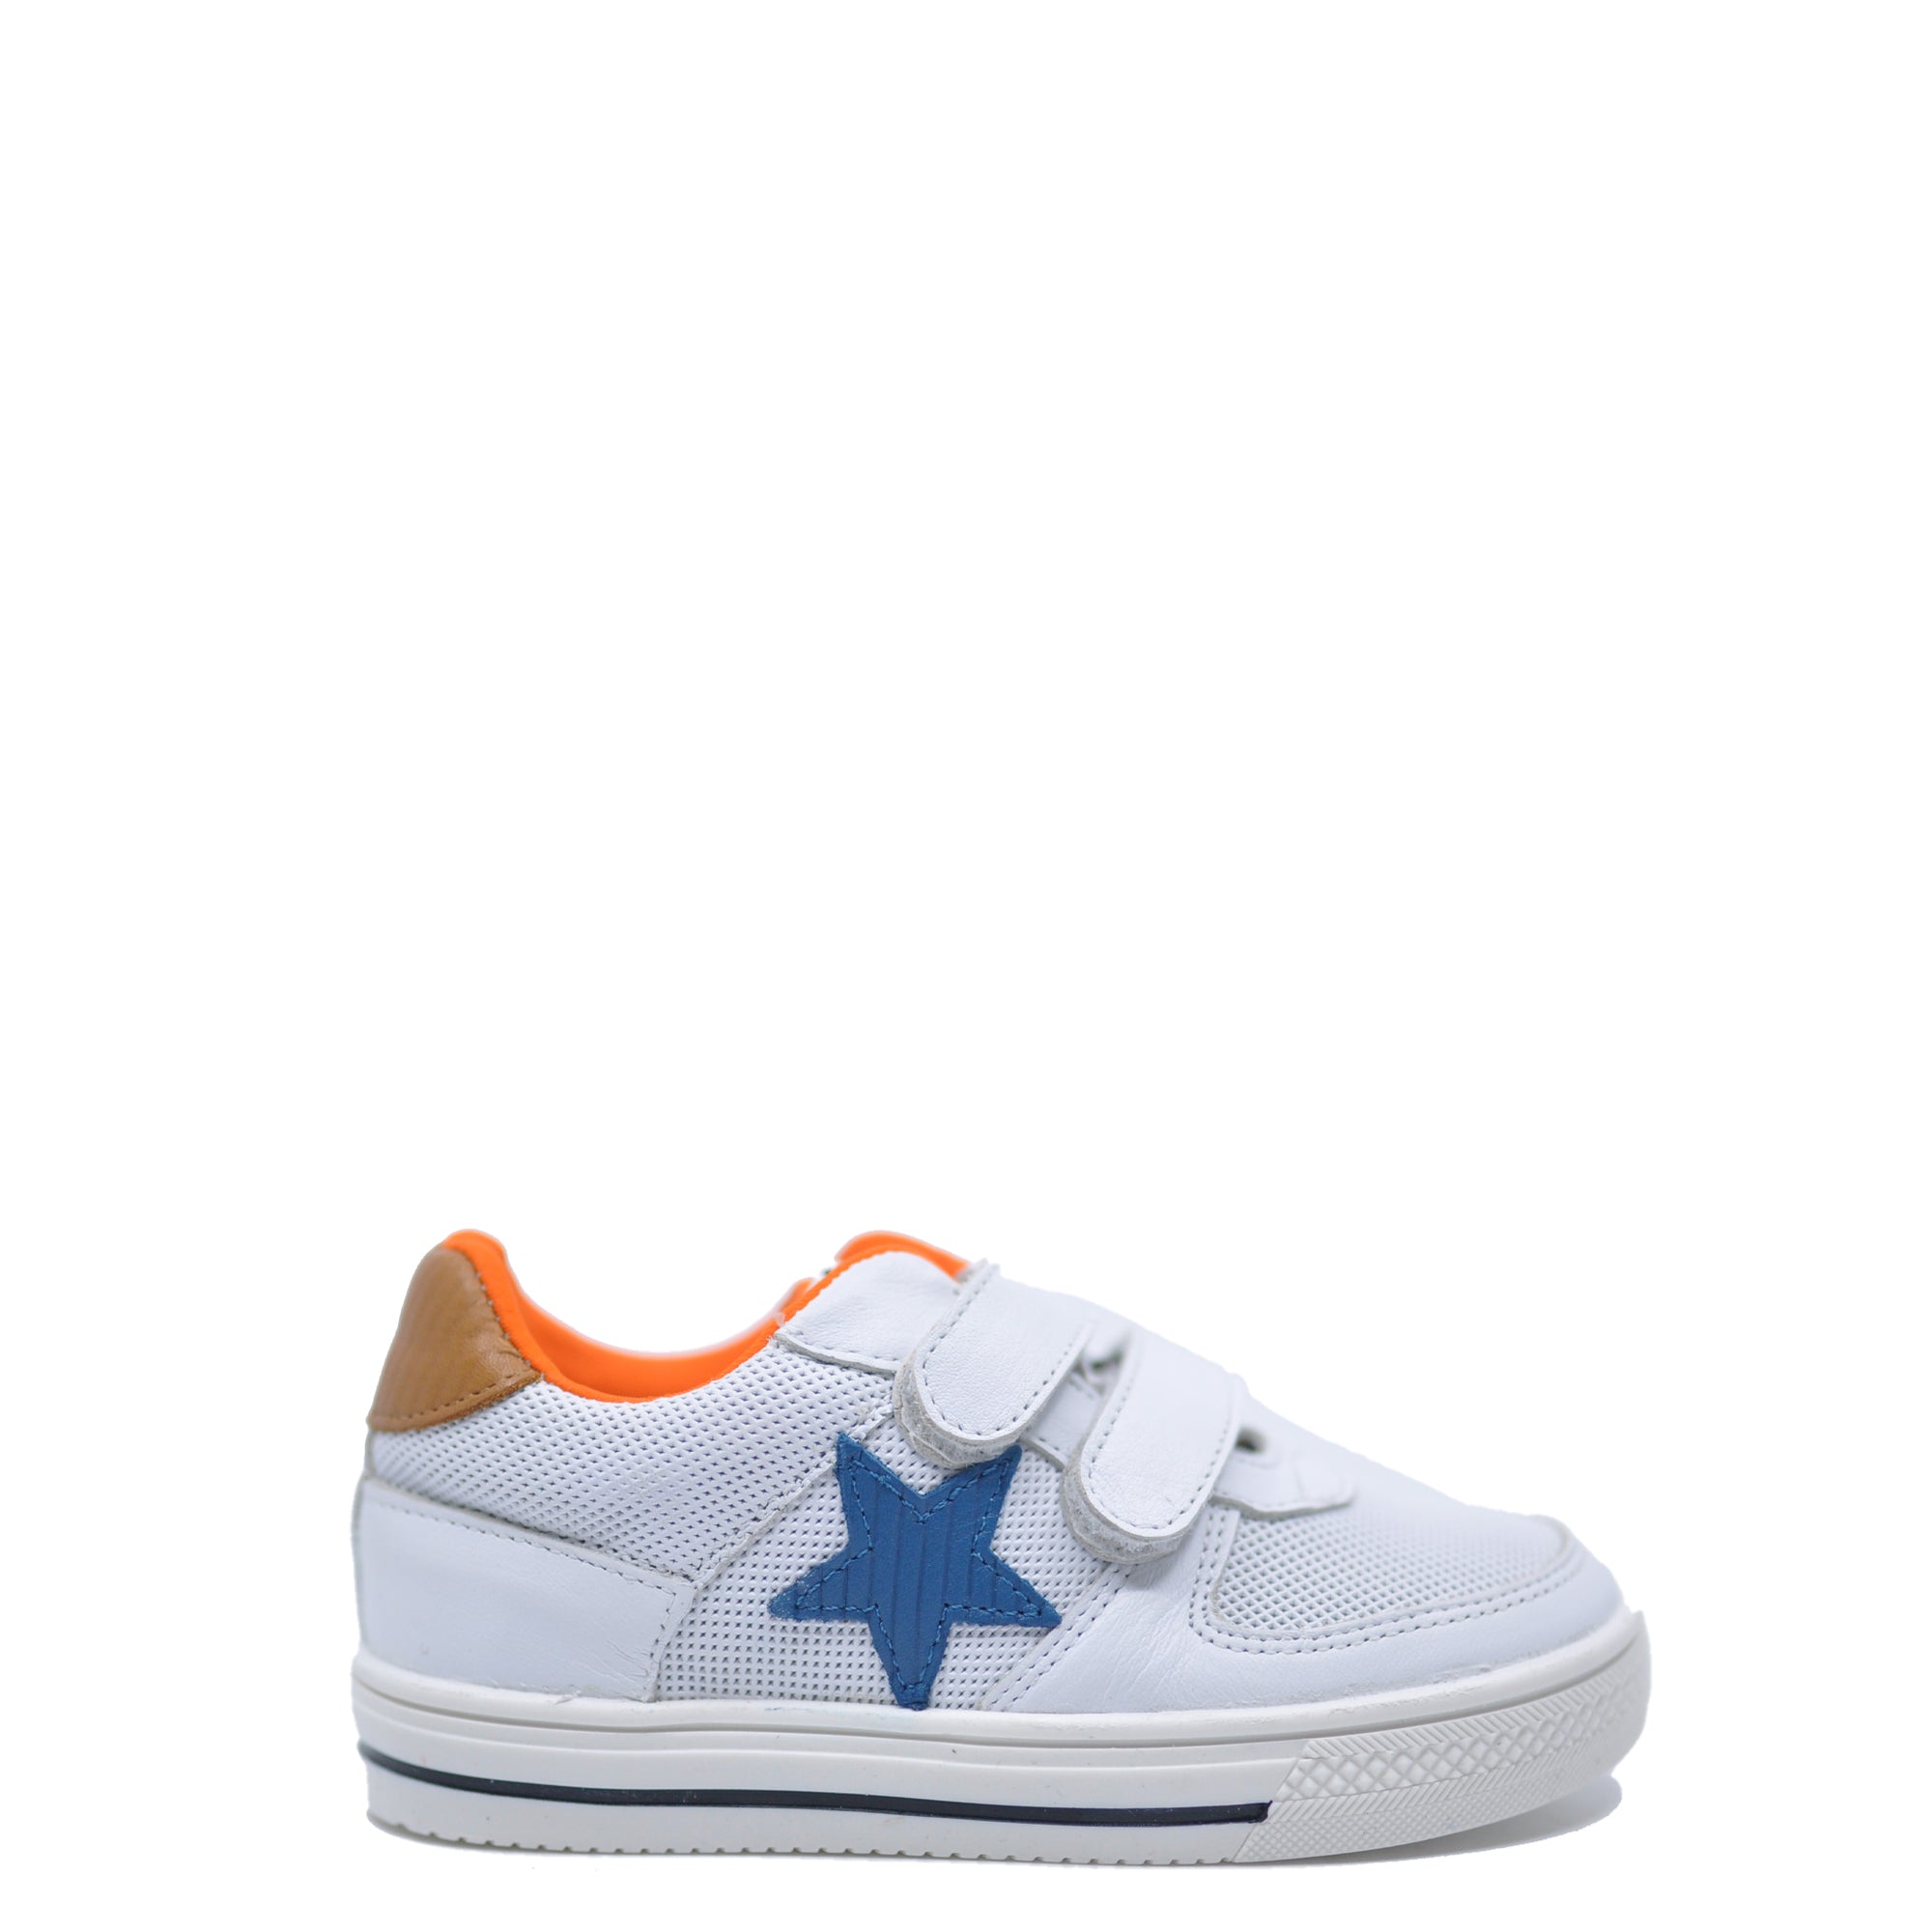 Acebos White Leather Star Sneaker-Tassel Children Shoes